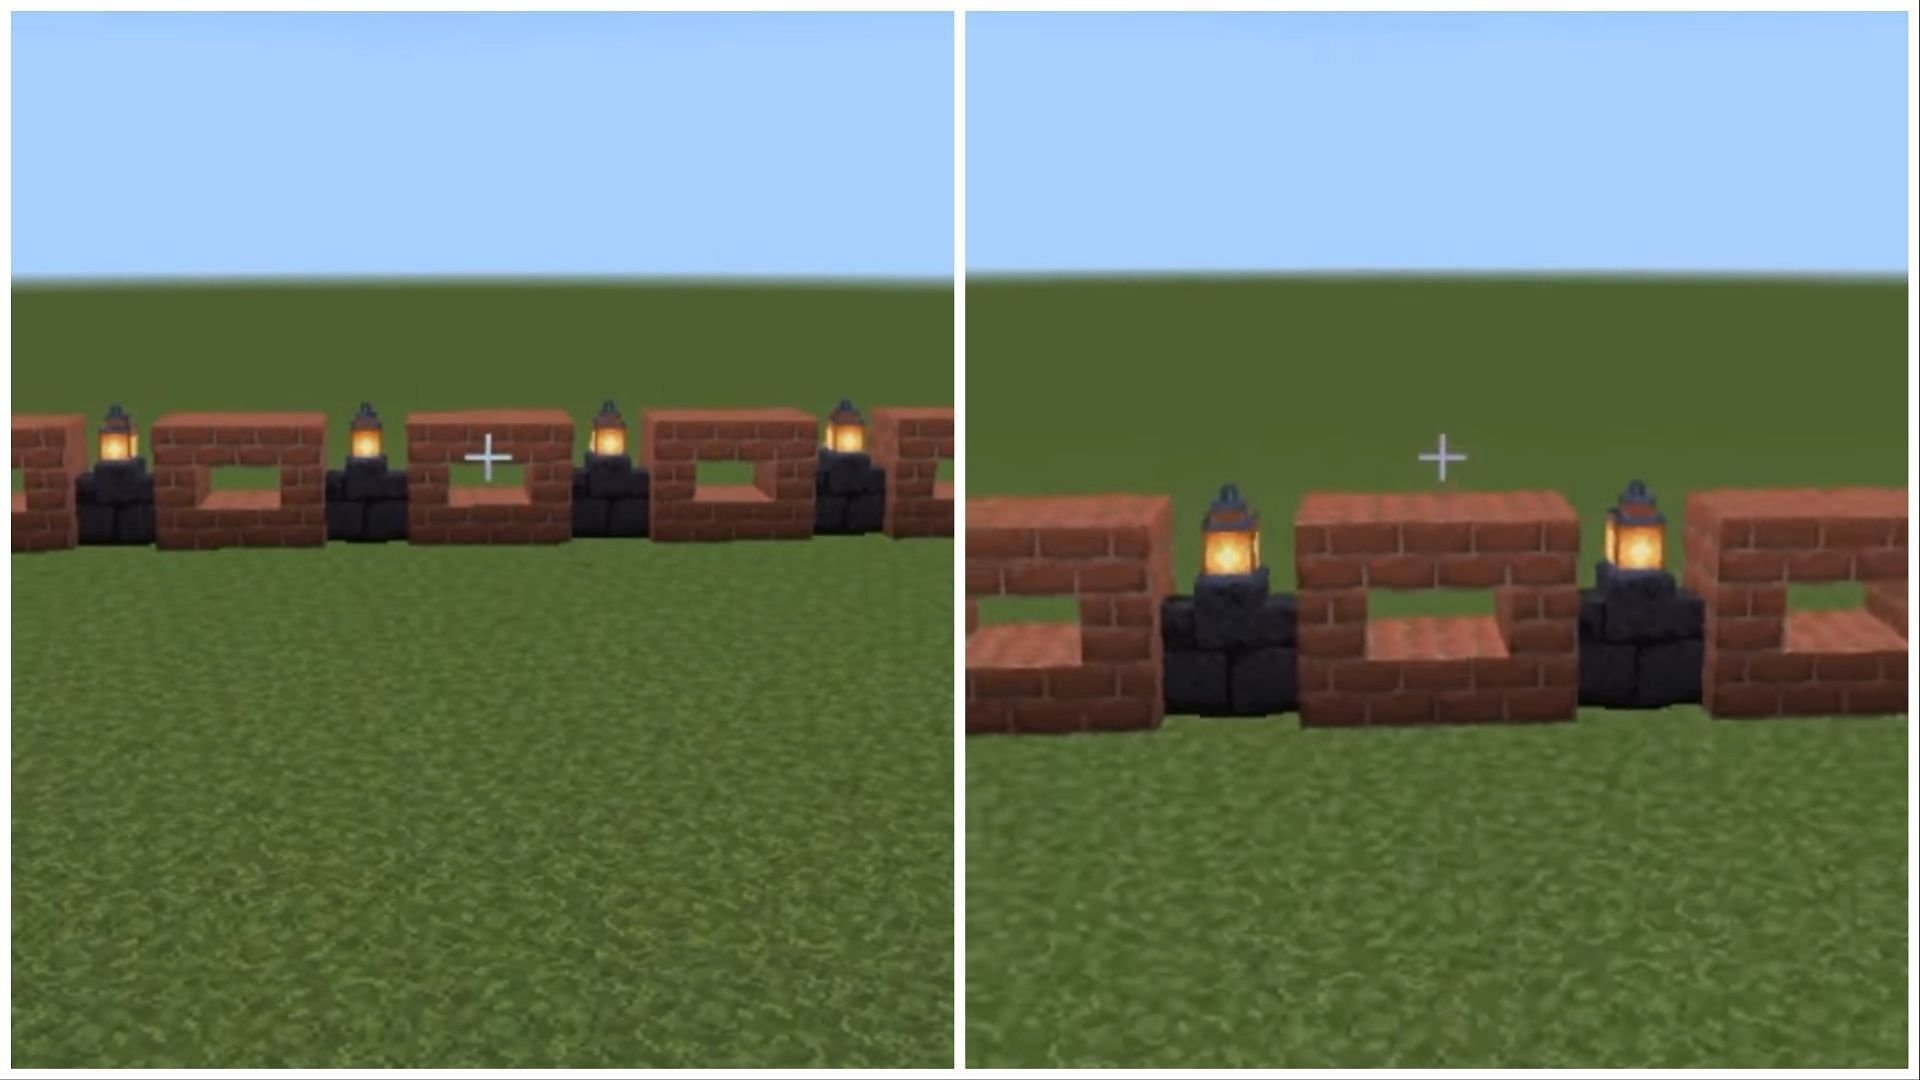 Simple wall design using lanterns and bricks (Image via Mojang)